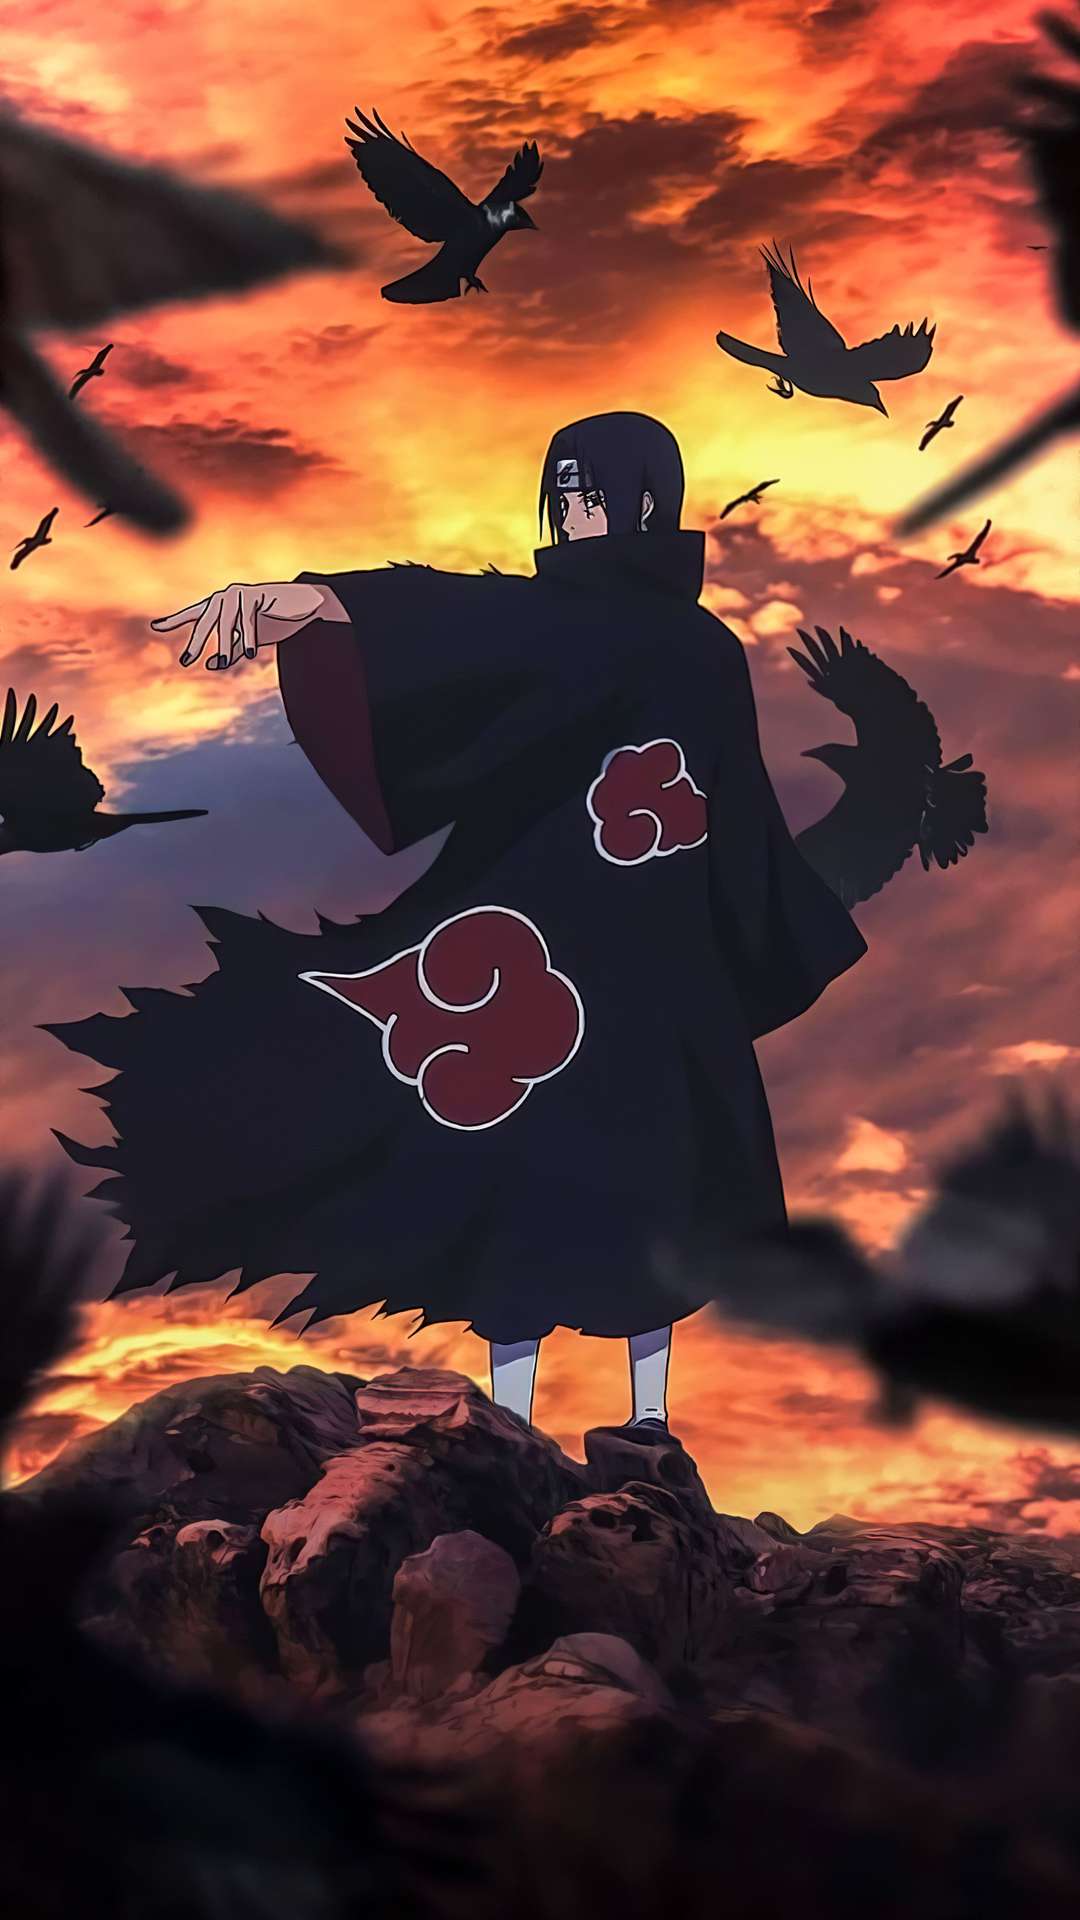 Itachi Uchiha from Naruto Anime Wallpaper ID7751